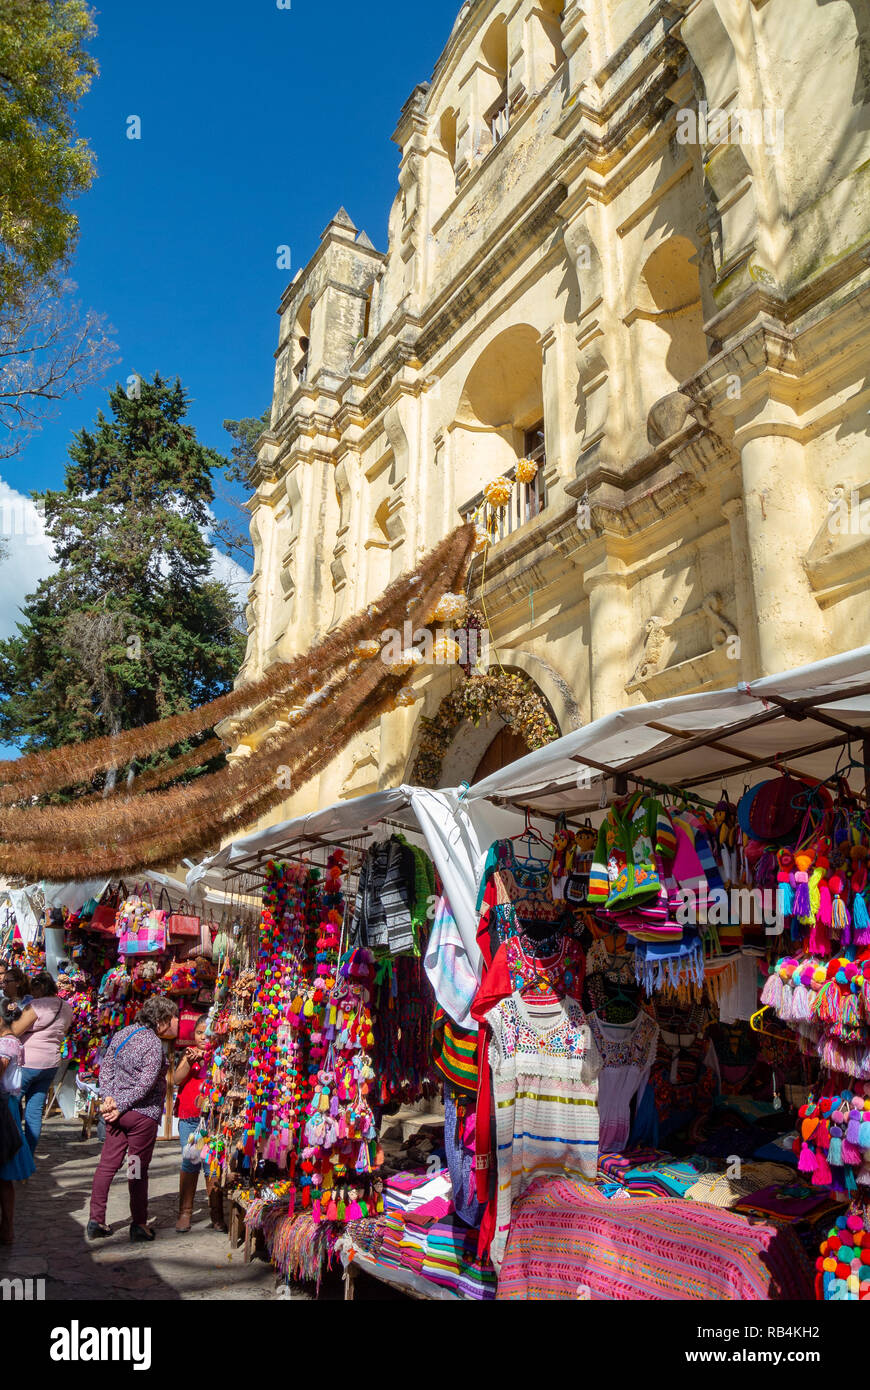 Mercado artesanias at Santo Domingo church, San Cristobal de las Casas,  Chiapas, Mexico Stock Photo - Alamy